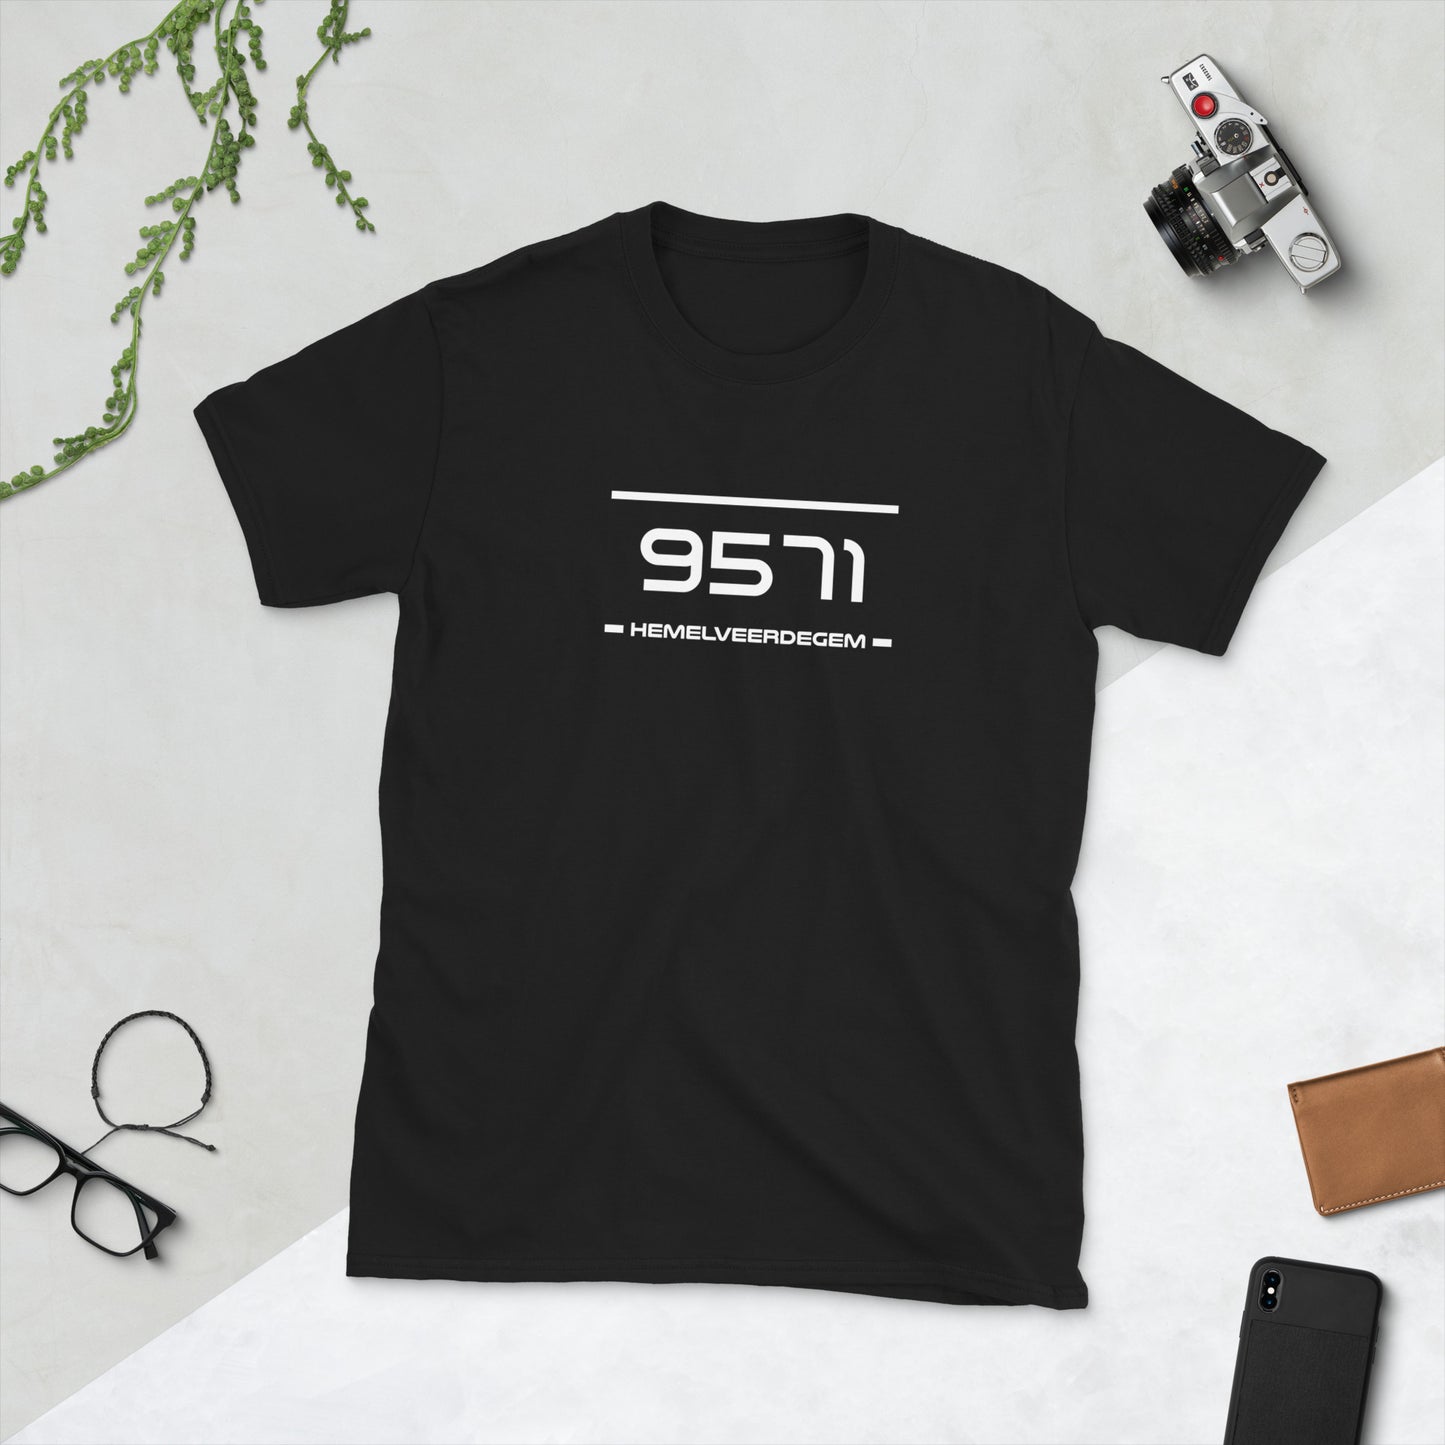 T-Shirt - 9571 - Hemelveerdegem